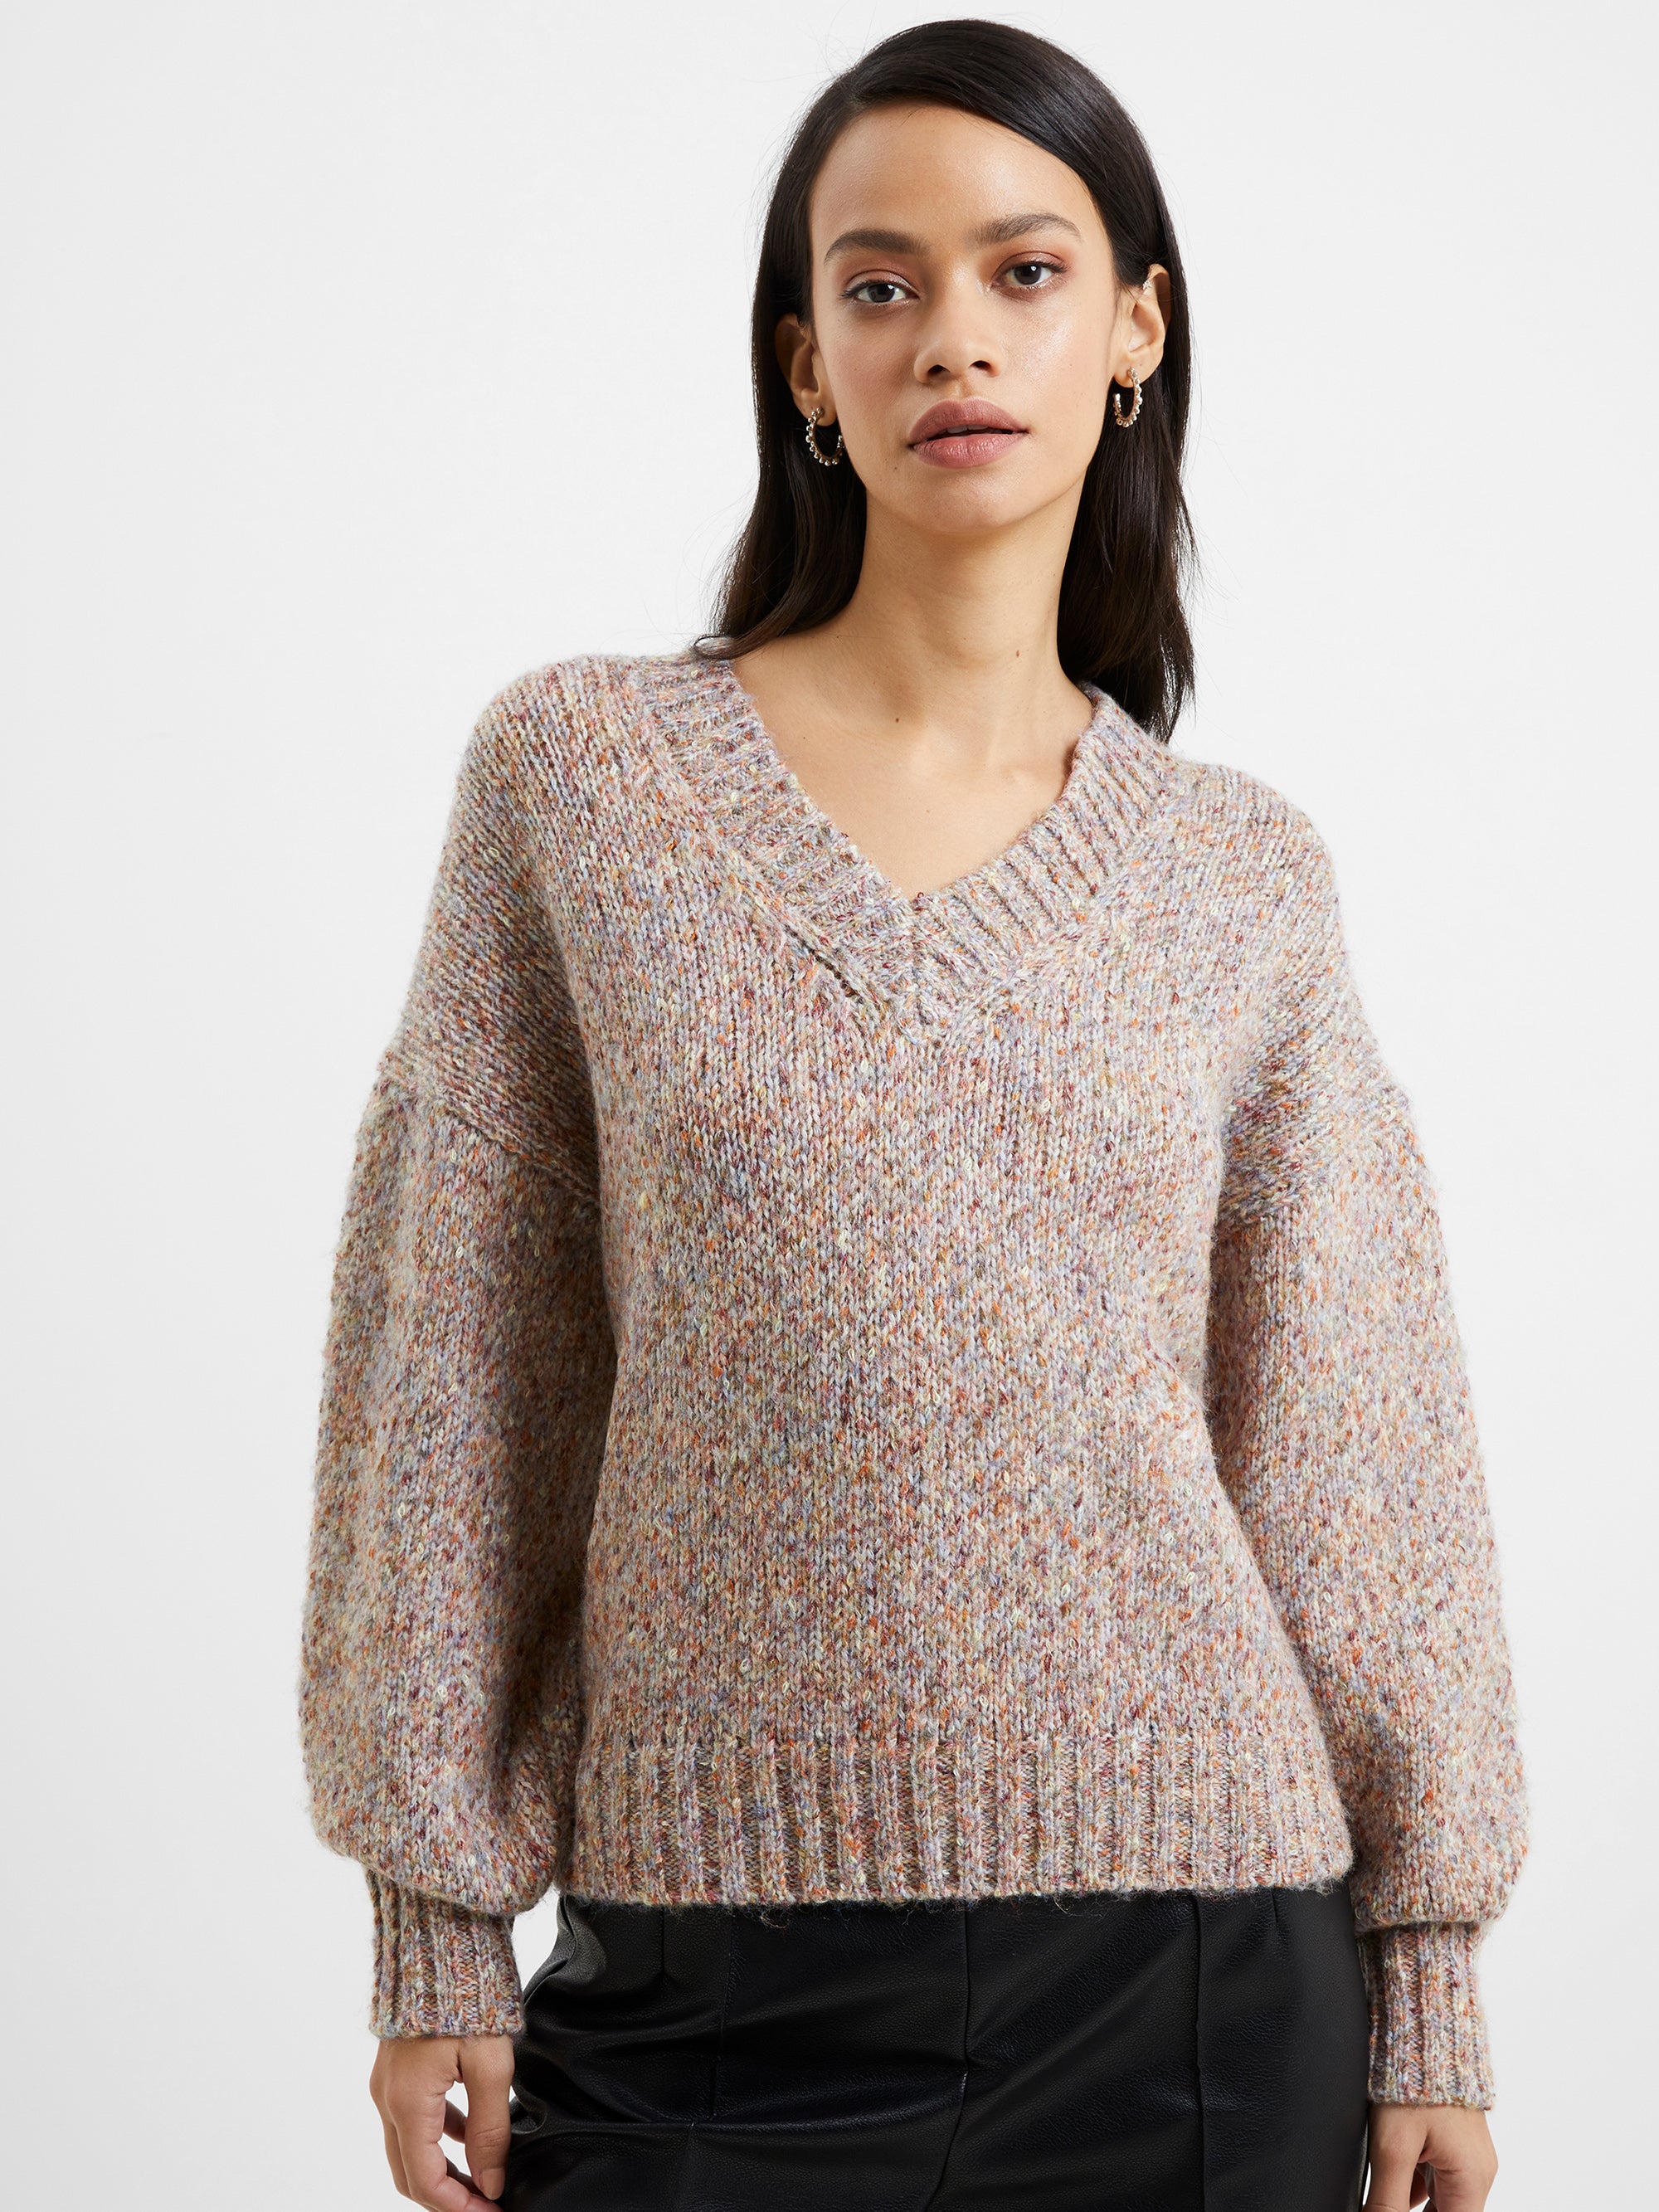 jill recycled marl knit jumper multi